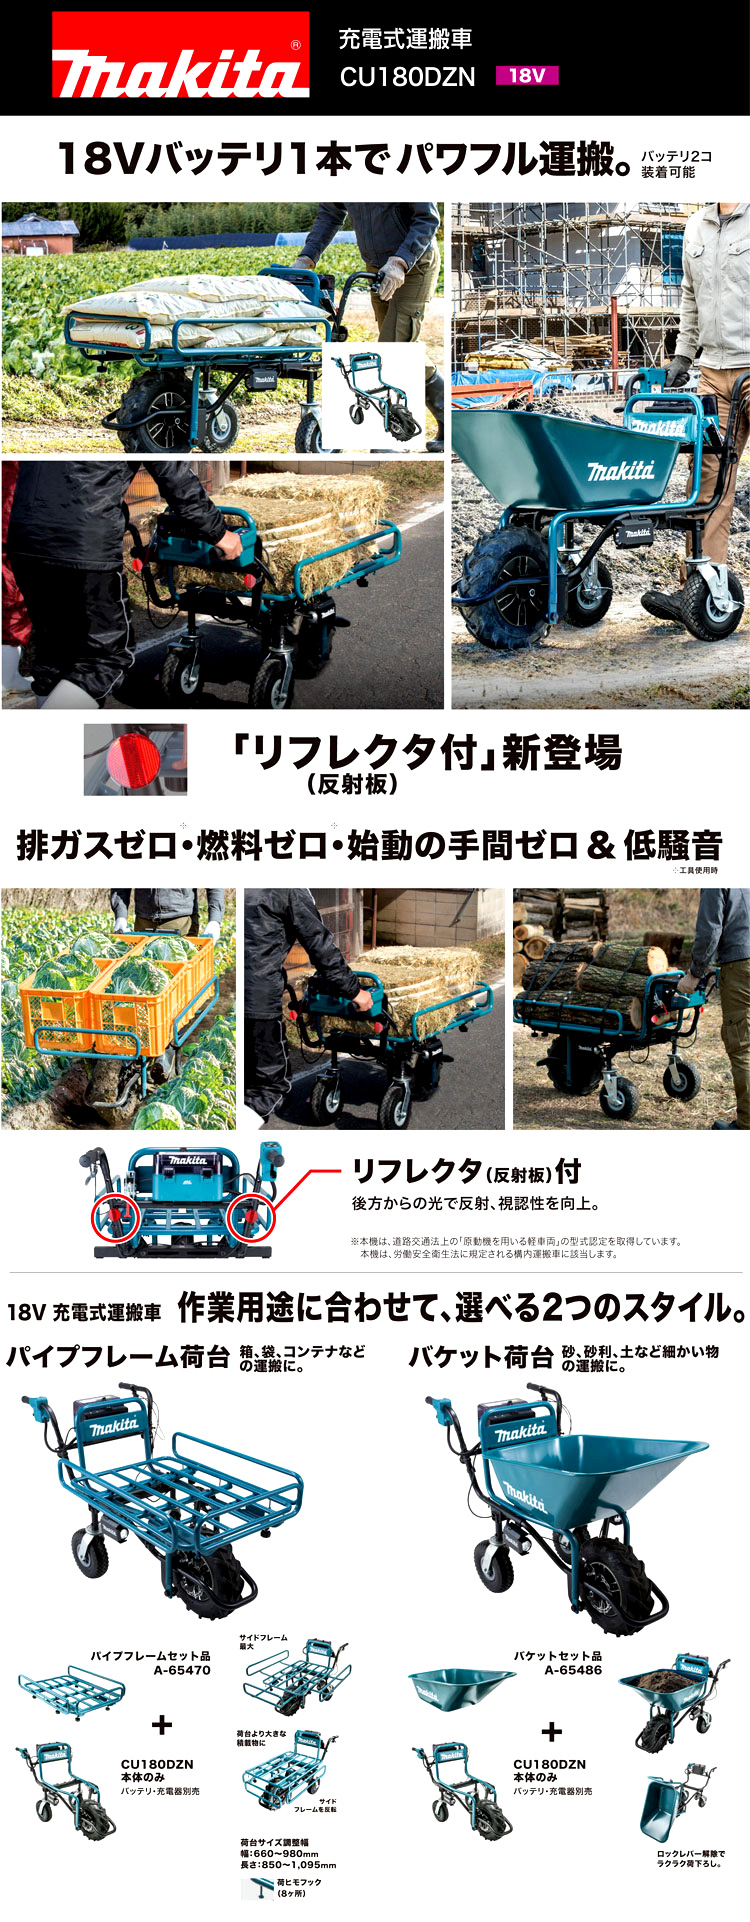 スペシャル特価 【ほろほろ様専用】マキタ 18V 充電式運搬車 CU180D